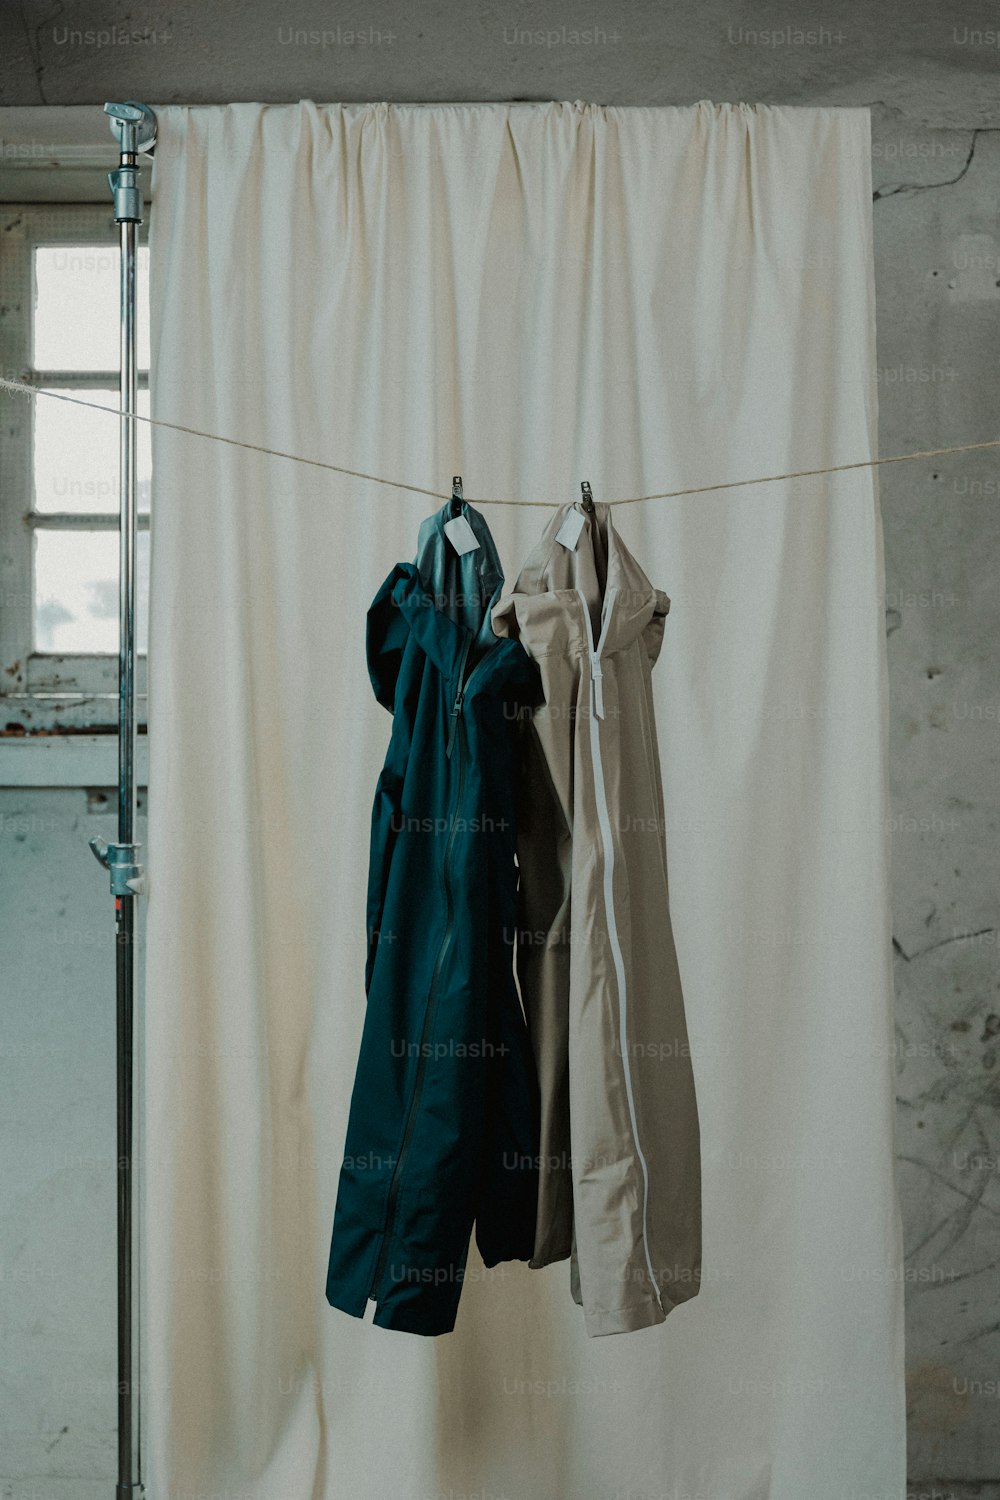 Kleidung, die an einer Wäscheleine vor einem Vorhang hängt